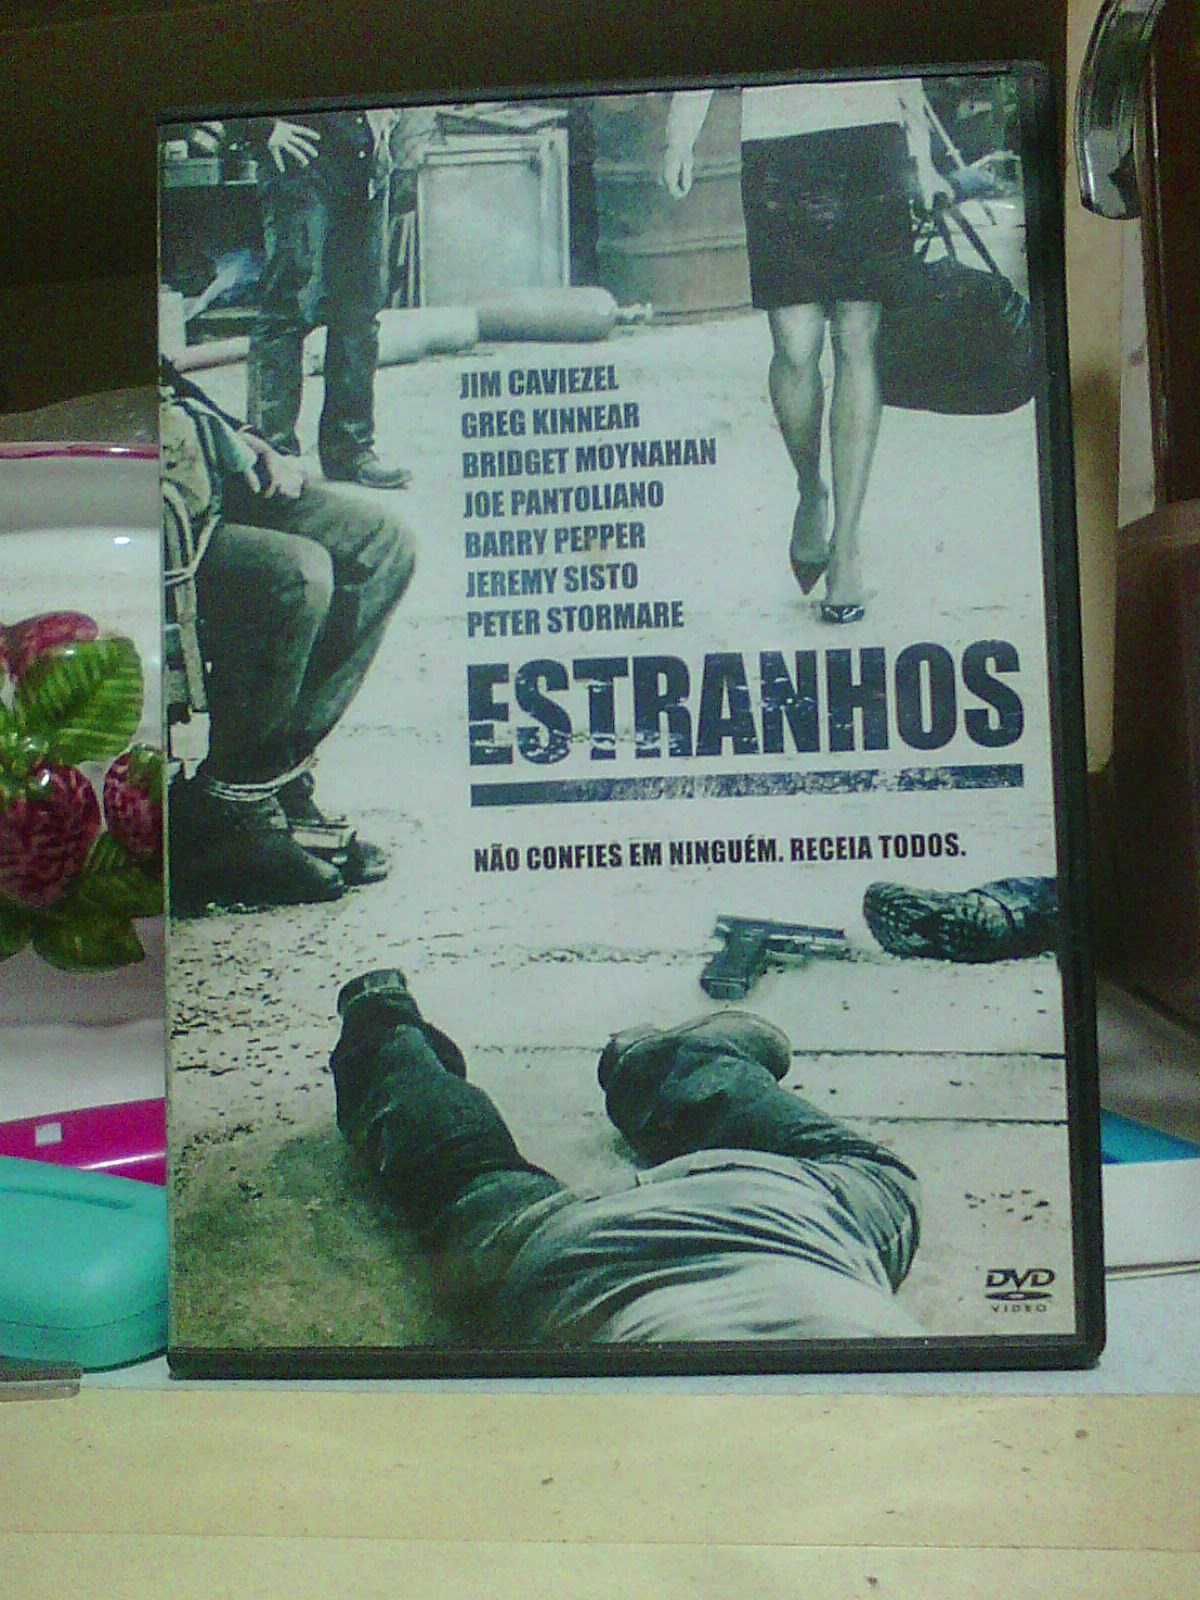 "Estranhos" com Jim Caviezel filme DVD